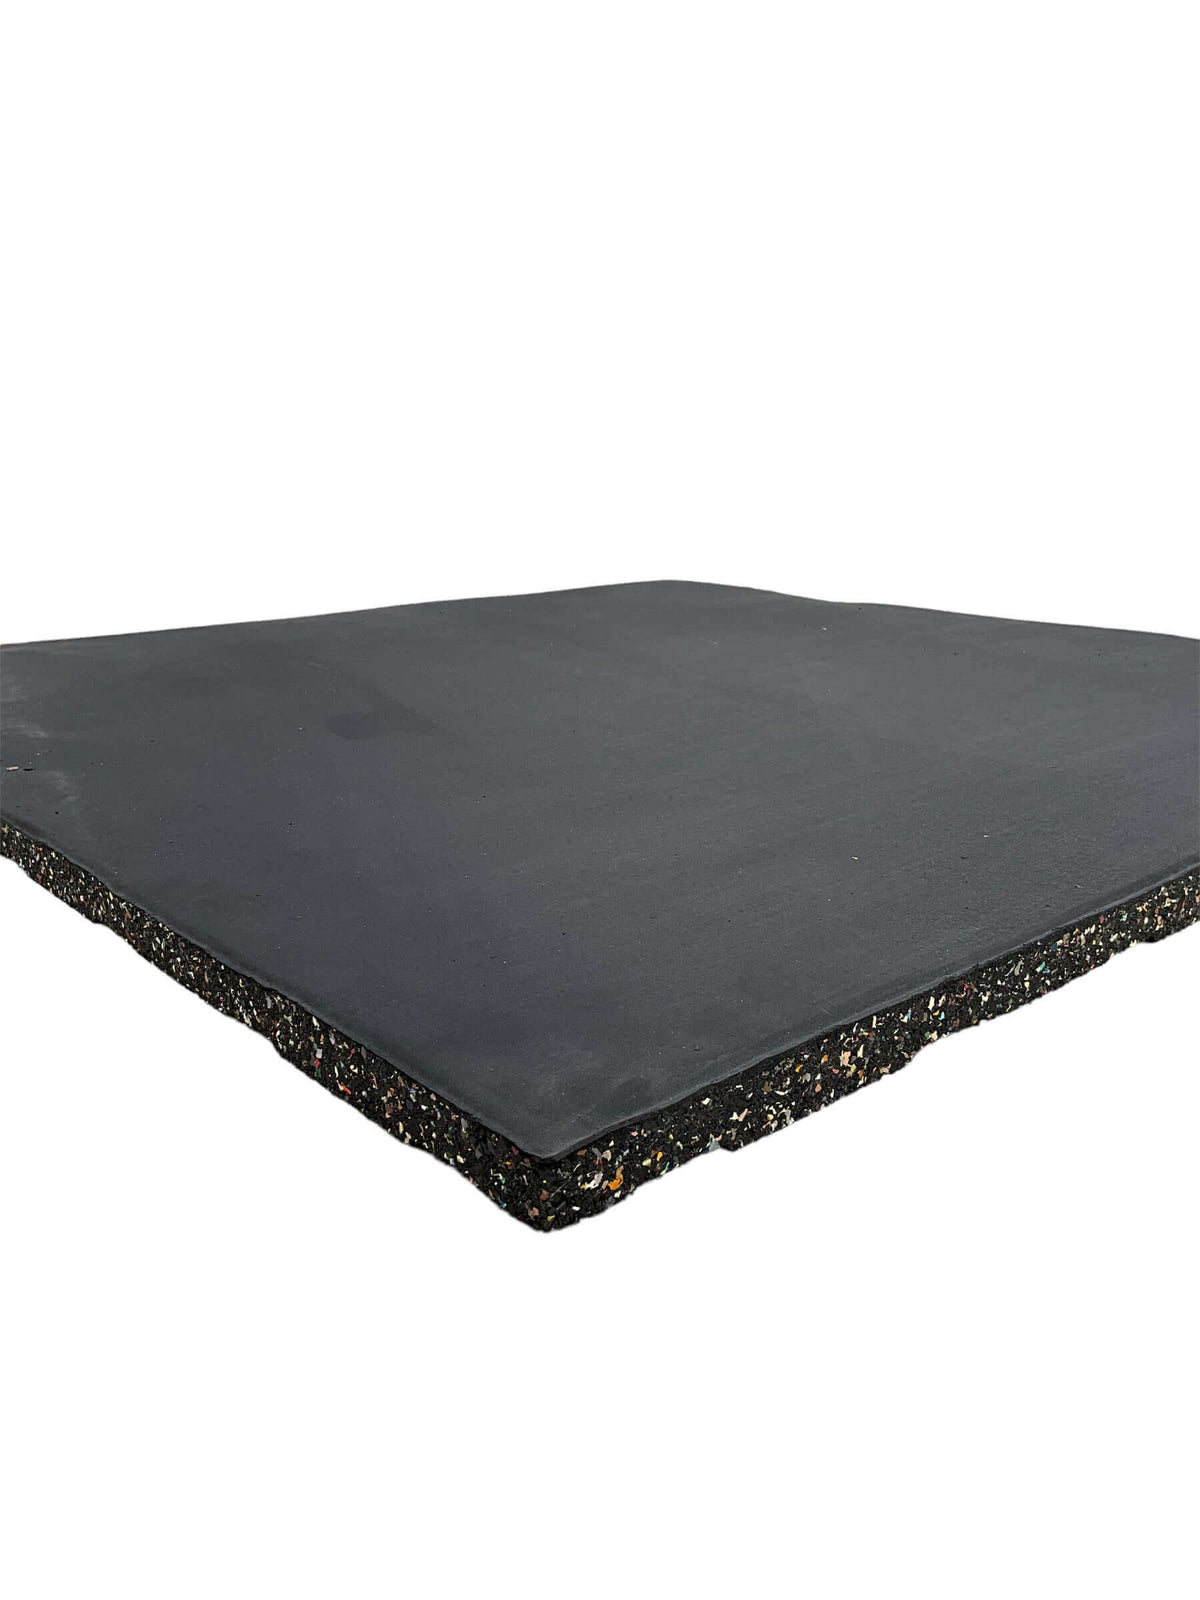 Single 20mm Rubber Gym Flooring Dual Density EPDM Rubber Dense Tile Mat 1m x 1m BLACK | INSOURCE